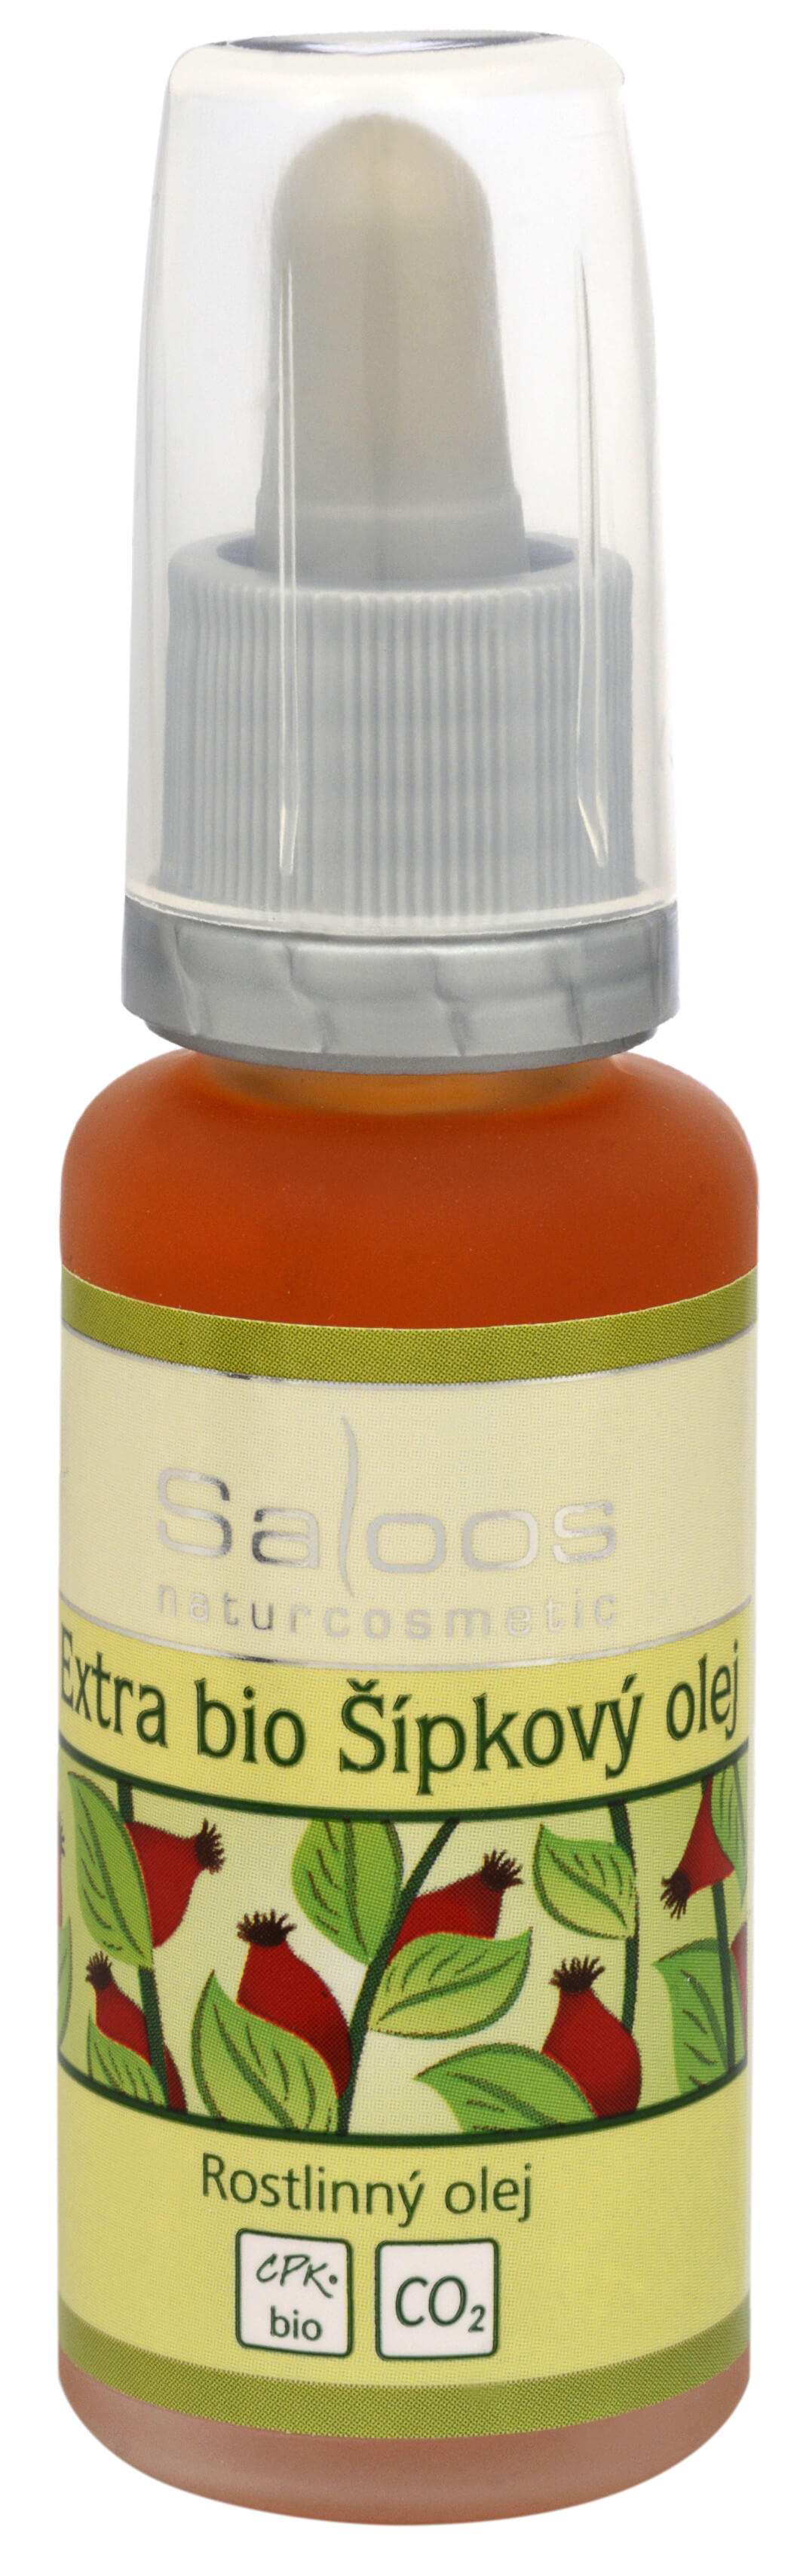 Saloos BIO Extra šípkový olej 20 ml + 2 mesiace na vrátenie tovaru